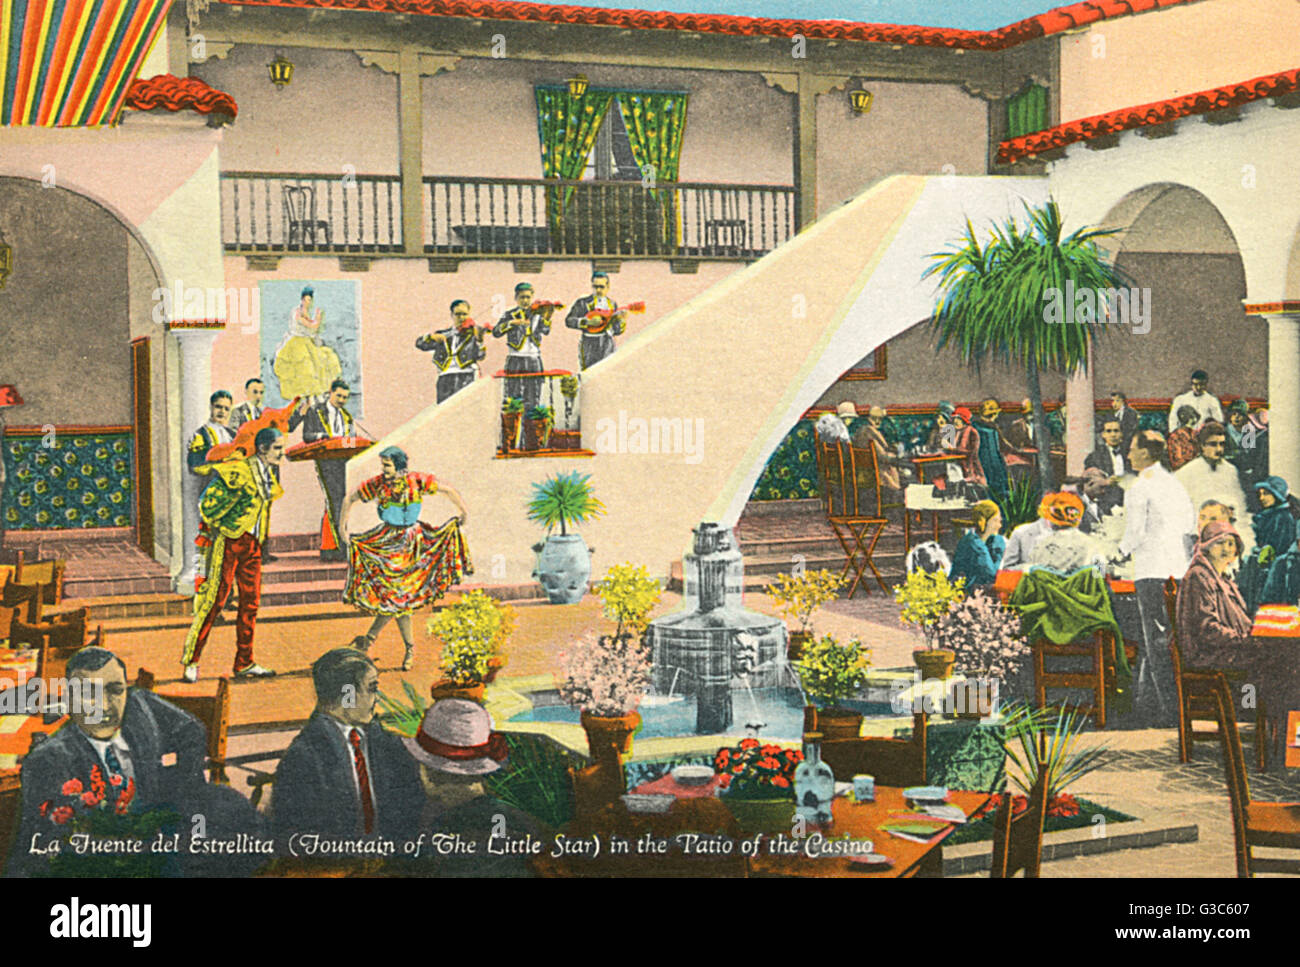 Das rückseitige Cover des ein Souvenirbuch mit Postkarten von Agua Caliente, einem beliebten Freizeitzentrum in Tijuana, Mexiko, Zentralamerika. La Fuente del Estrellita (Brunnen von den kleinen Stern) zeigt auf der Terrasse des Casinos, mit Musikern, Tänzern, Diners und wai Stockfoto